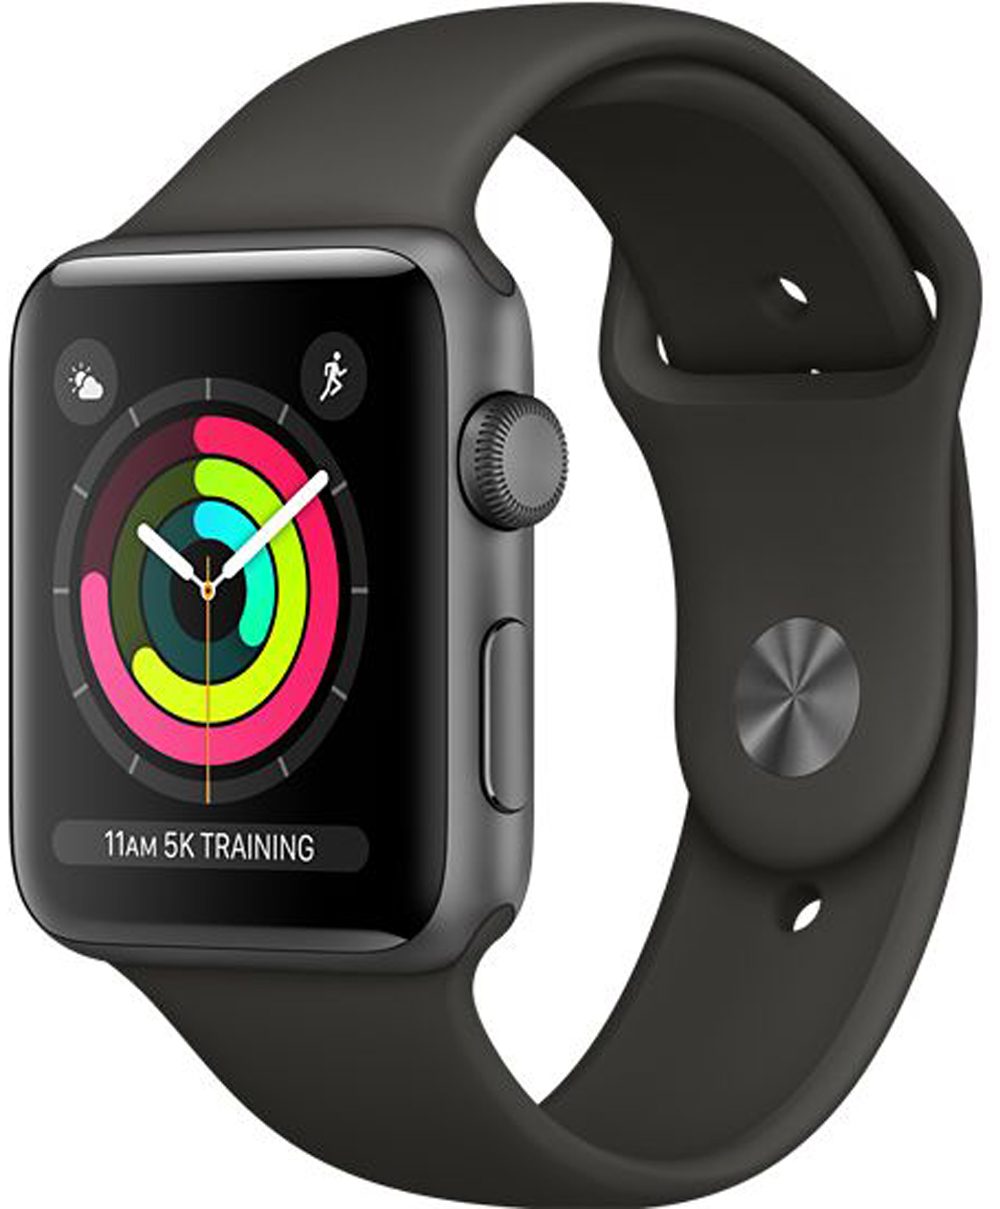 Image 1 : [Test] Apple Watch Series 3 : faut-il craquer pour le modèle GPS ?